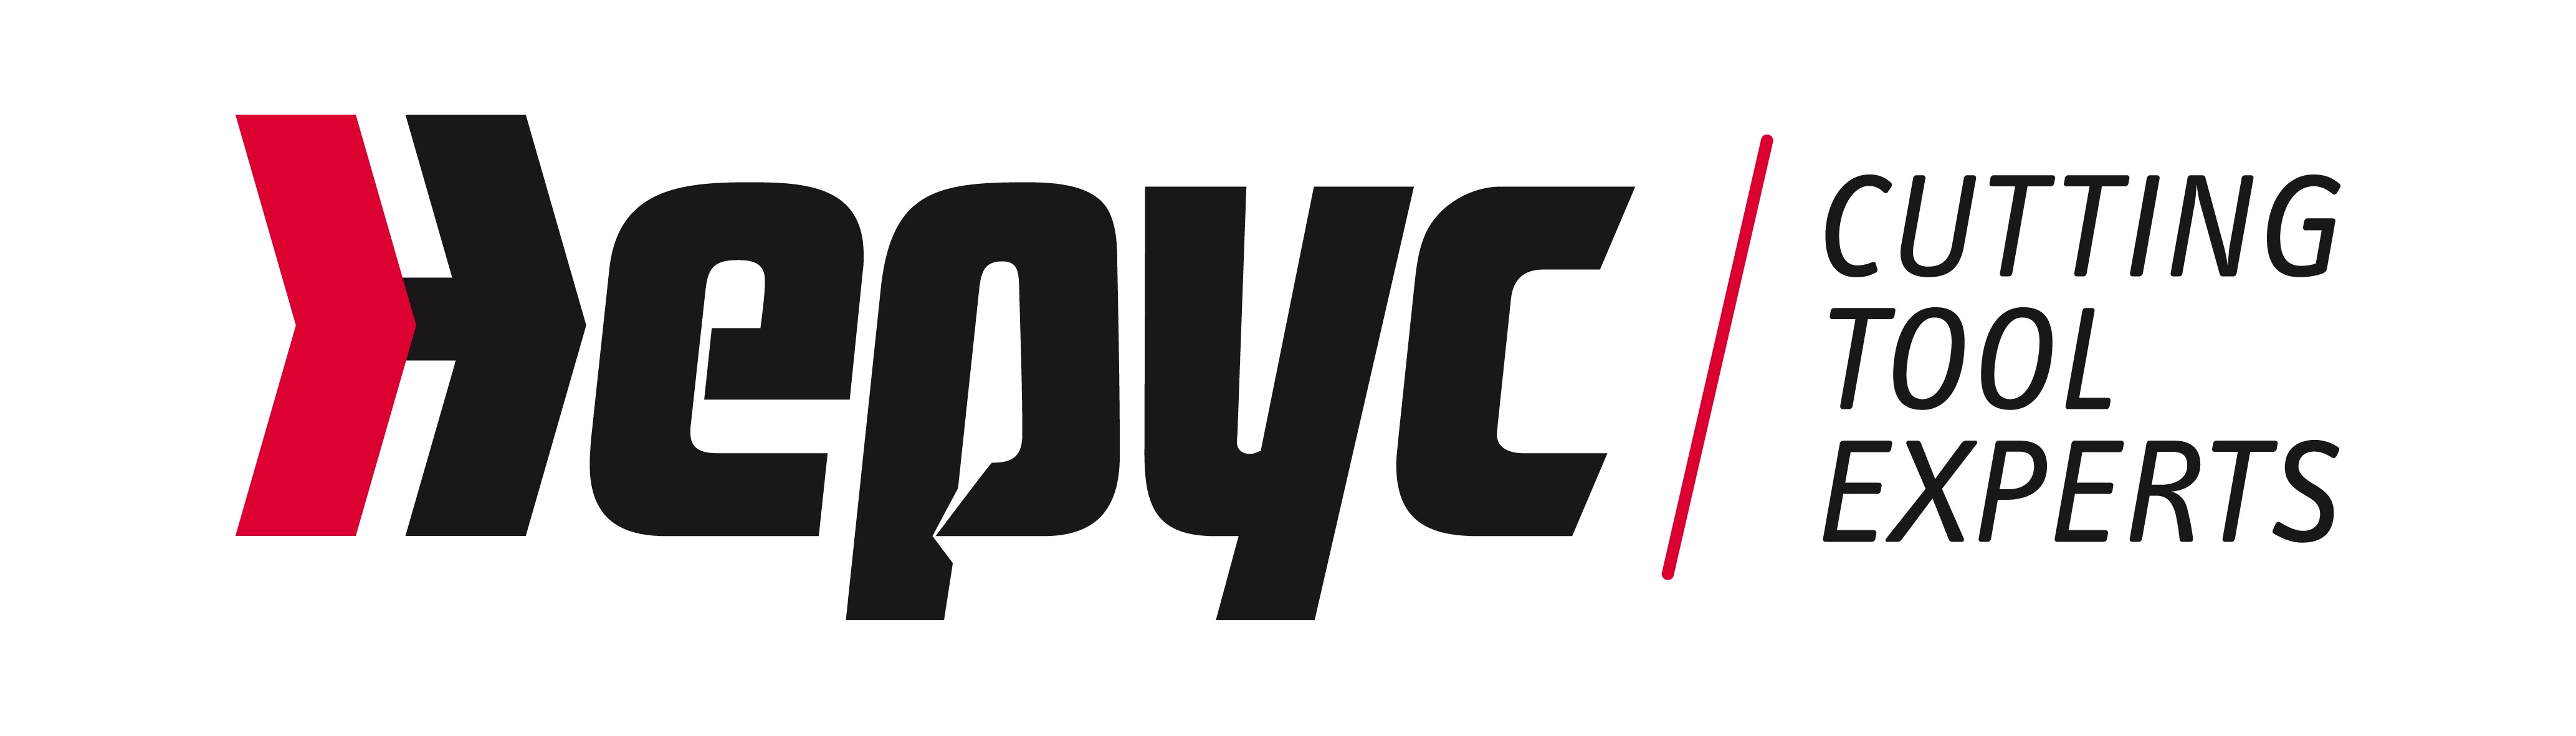 Hepyc-en logoa - Logo de Hepyc